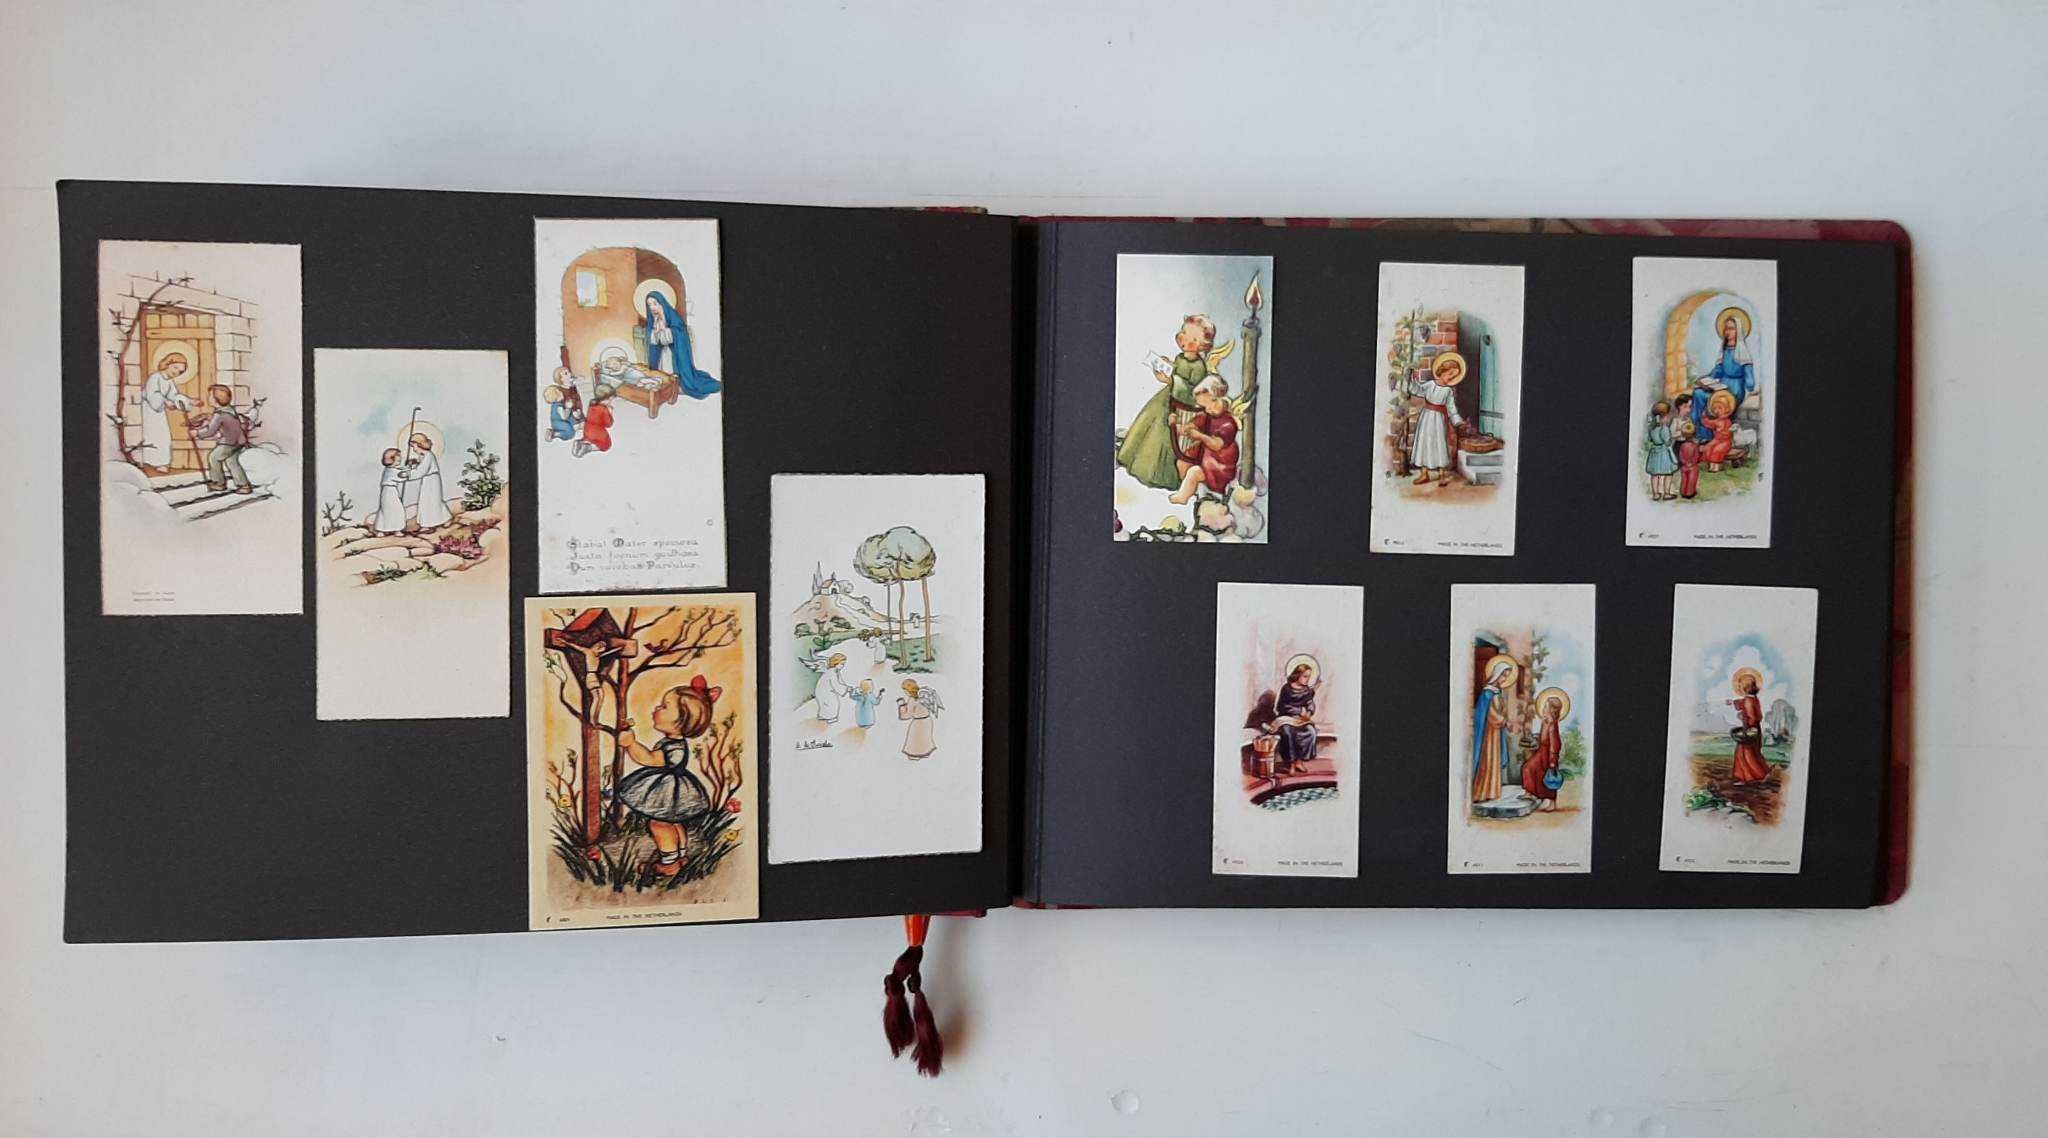 Colecção de 116 pagelas portuguesas antigas apresentadas num álbum